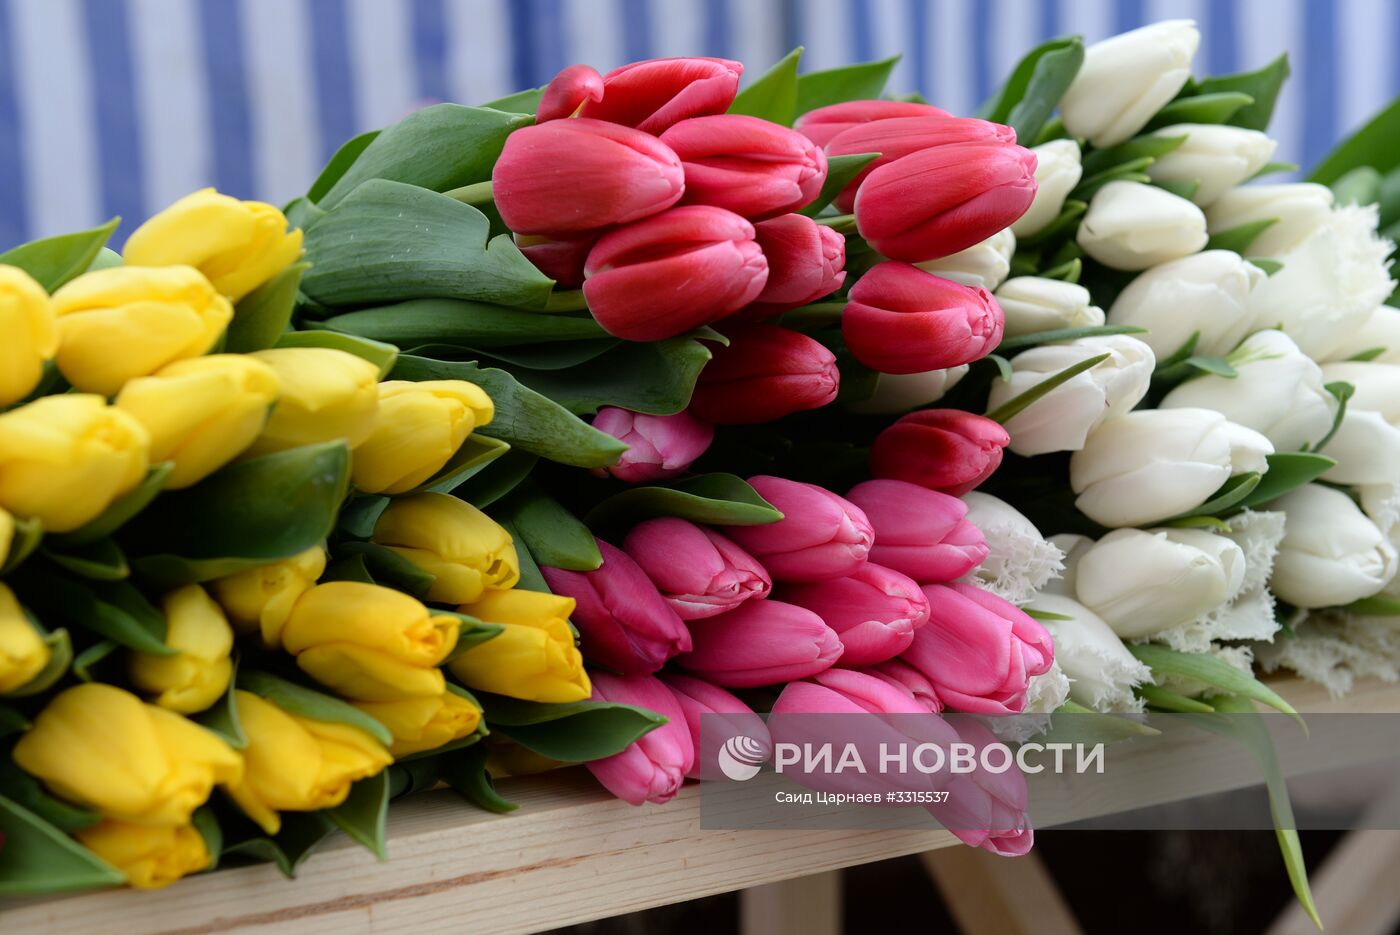 Подготовка к празднованию 8 Марта в городах России